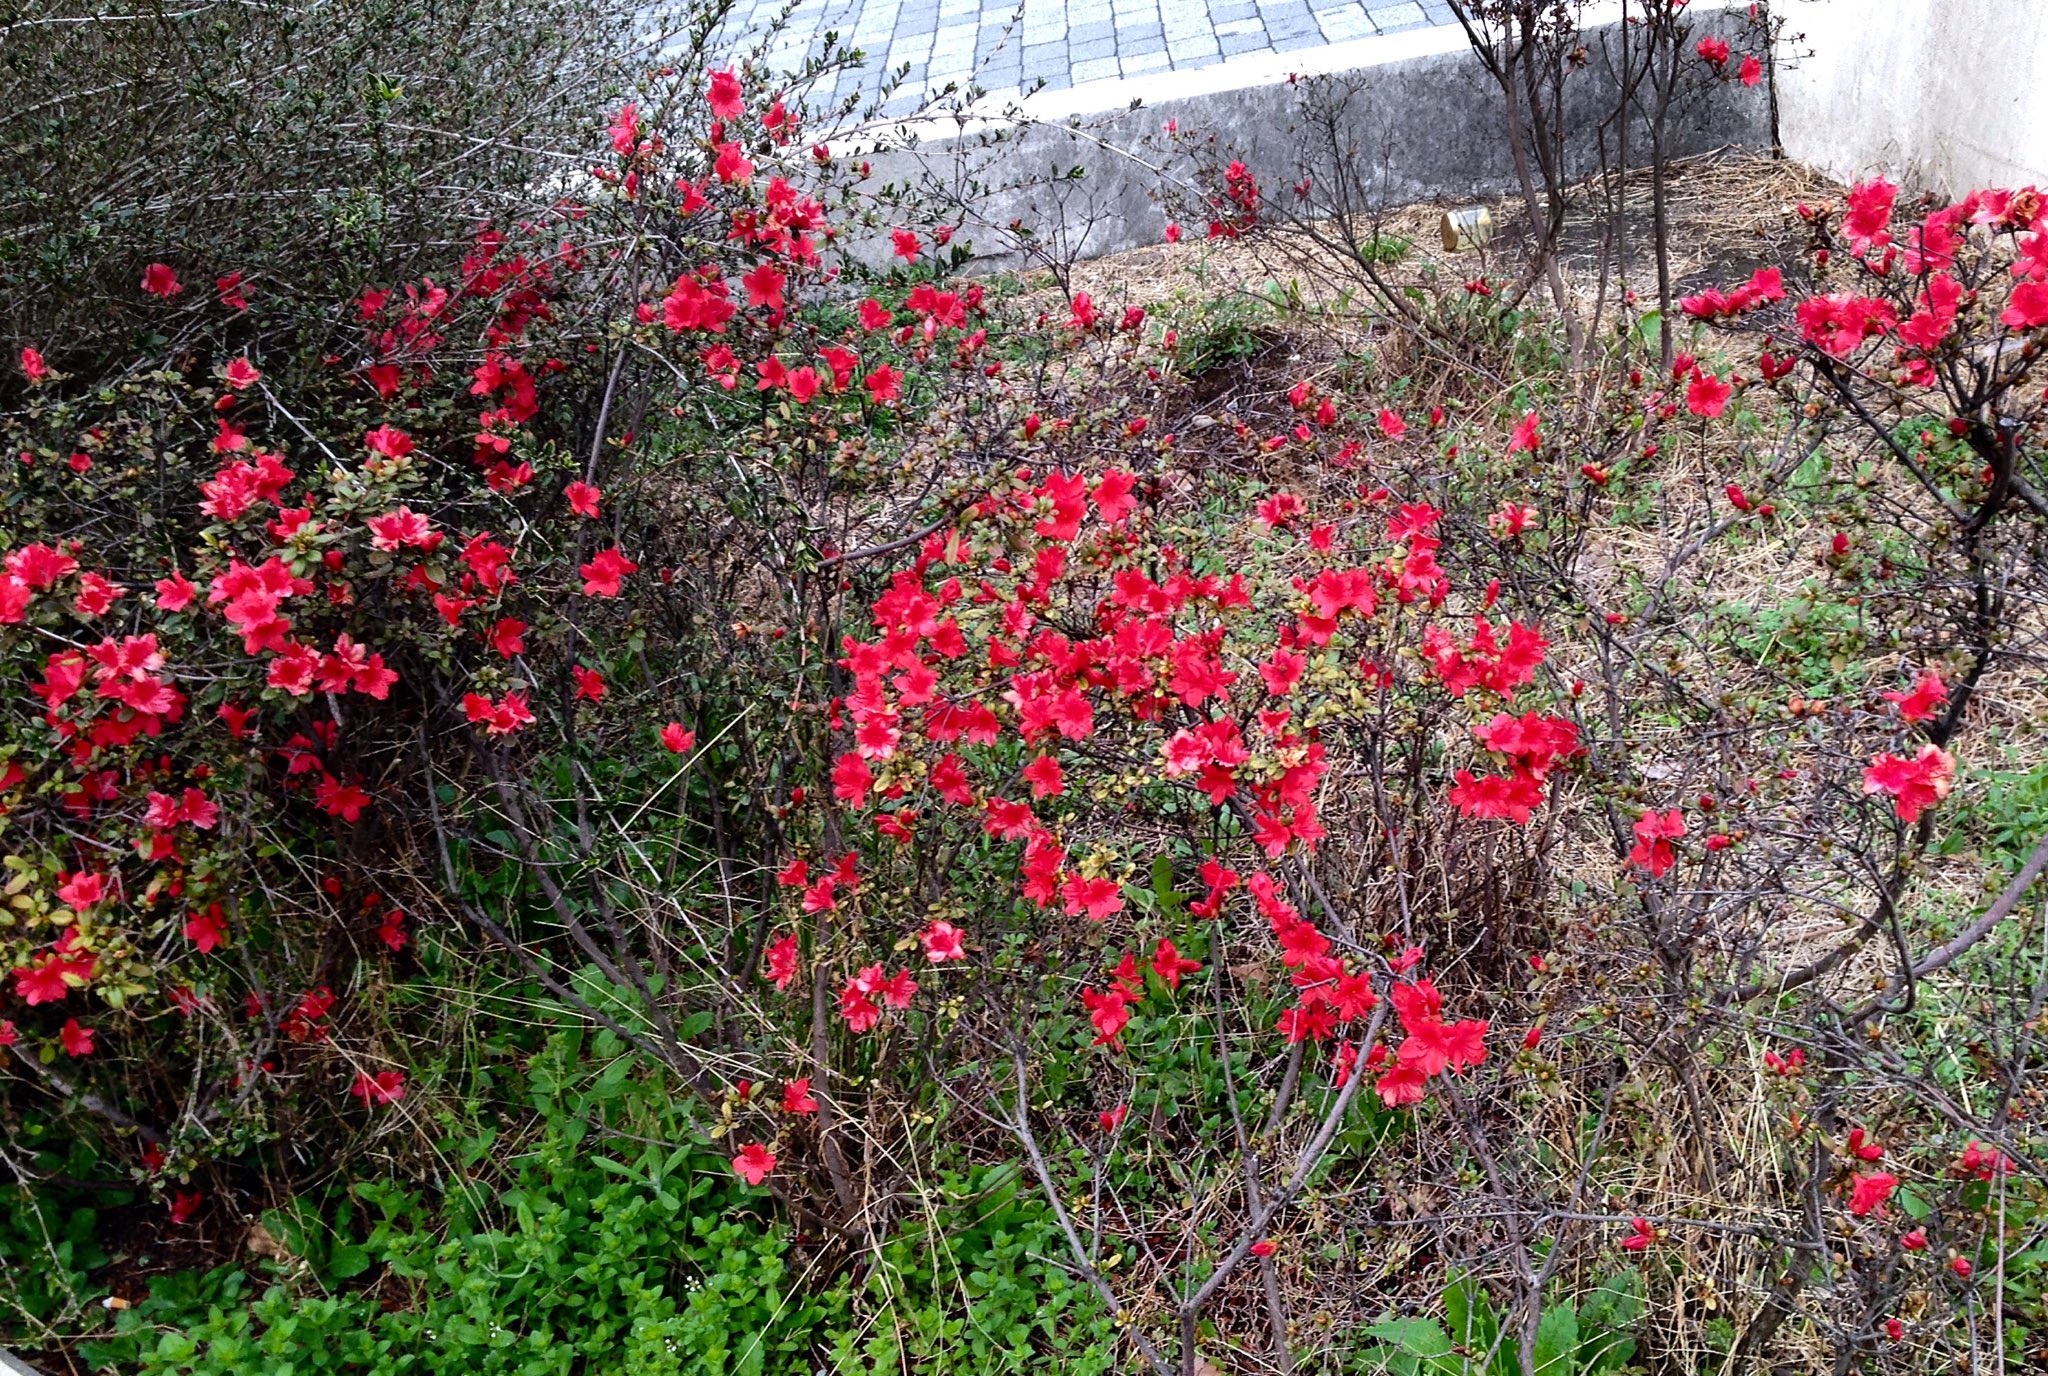 浅見 Lefty Blue En Twitter おやおや これは早い 新宿駅東口線路近くの植え込みに赤い花 種類 はわからないが ツツジの仲間 かなり花が小さいので いわゆる園芸品種ではない 野山に咲く種類なのではと想像するのだが どうだろう ツツジ 躑躅 Azalea